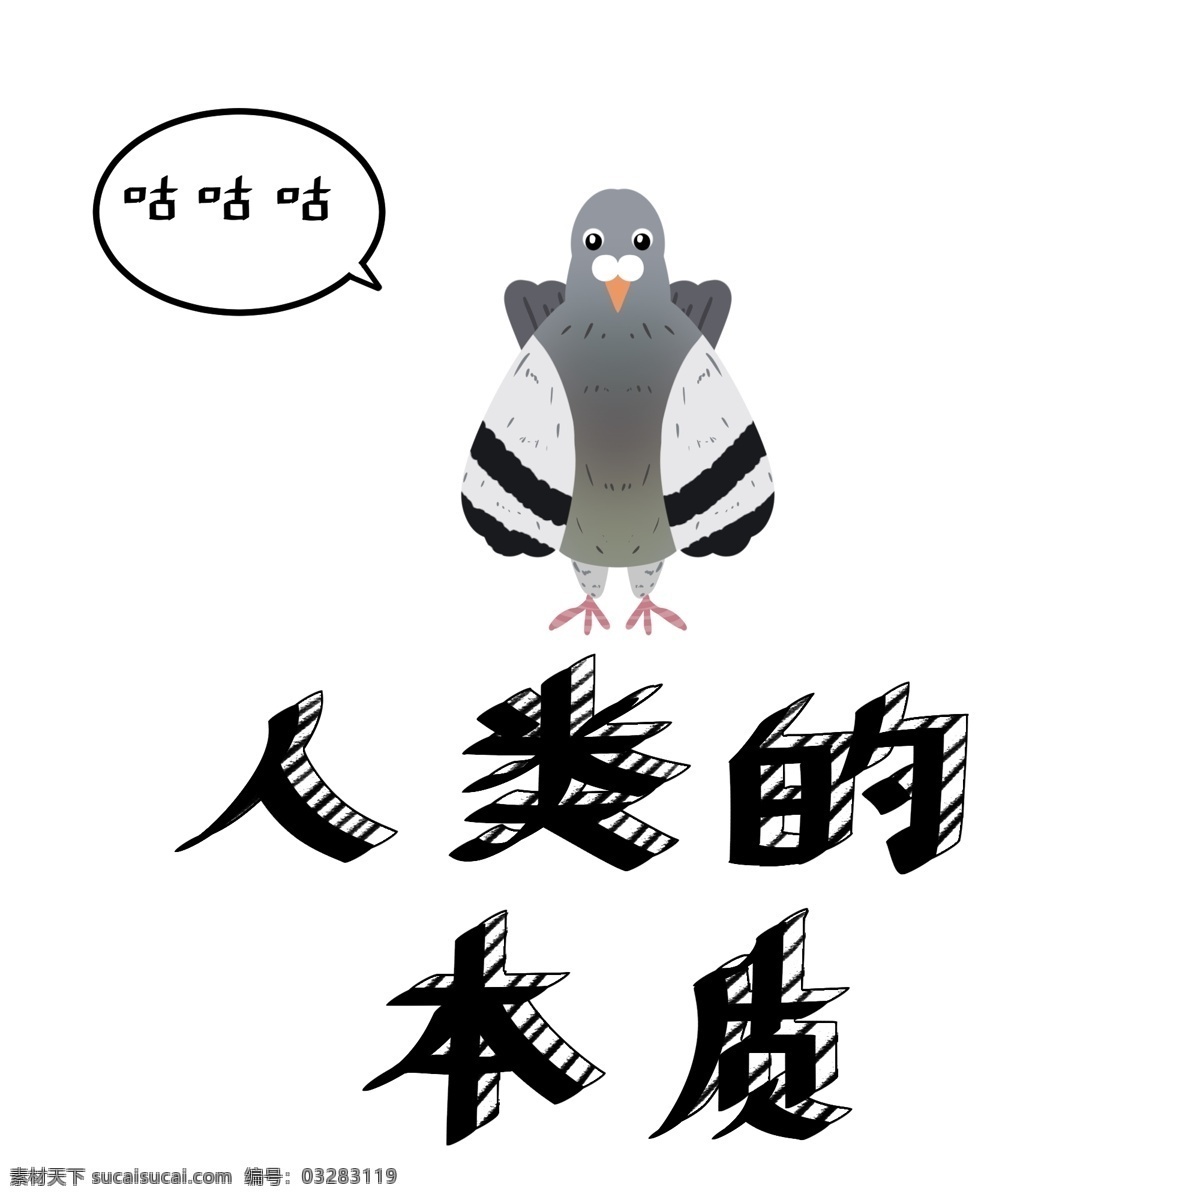 网络 流行语 鸽子 搞笑 表情 包 手绘 艺术 字 网络流行语 表情包 人类的本质 中文 免抠 艺术字